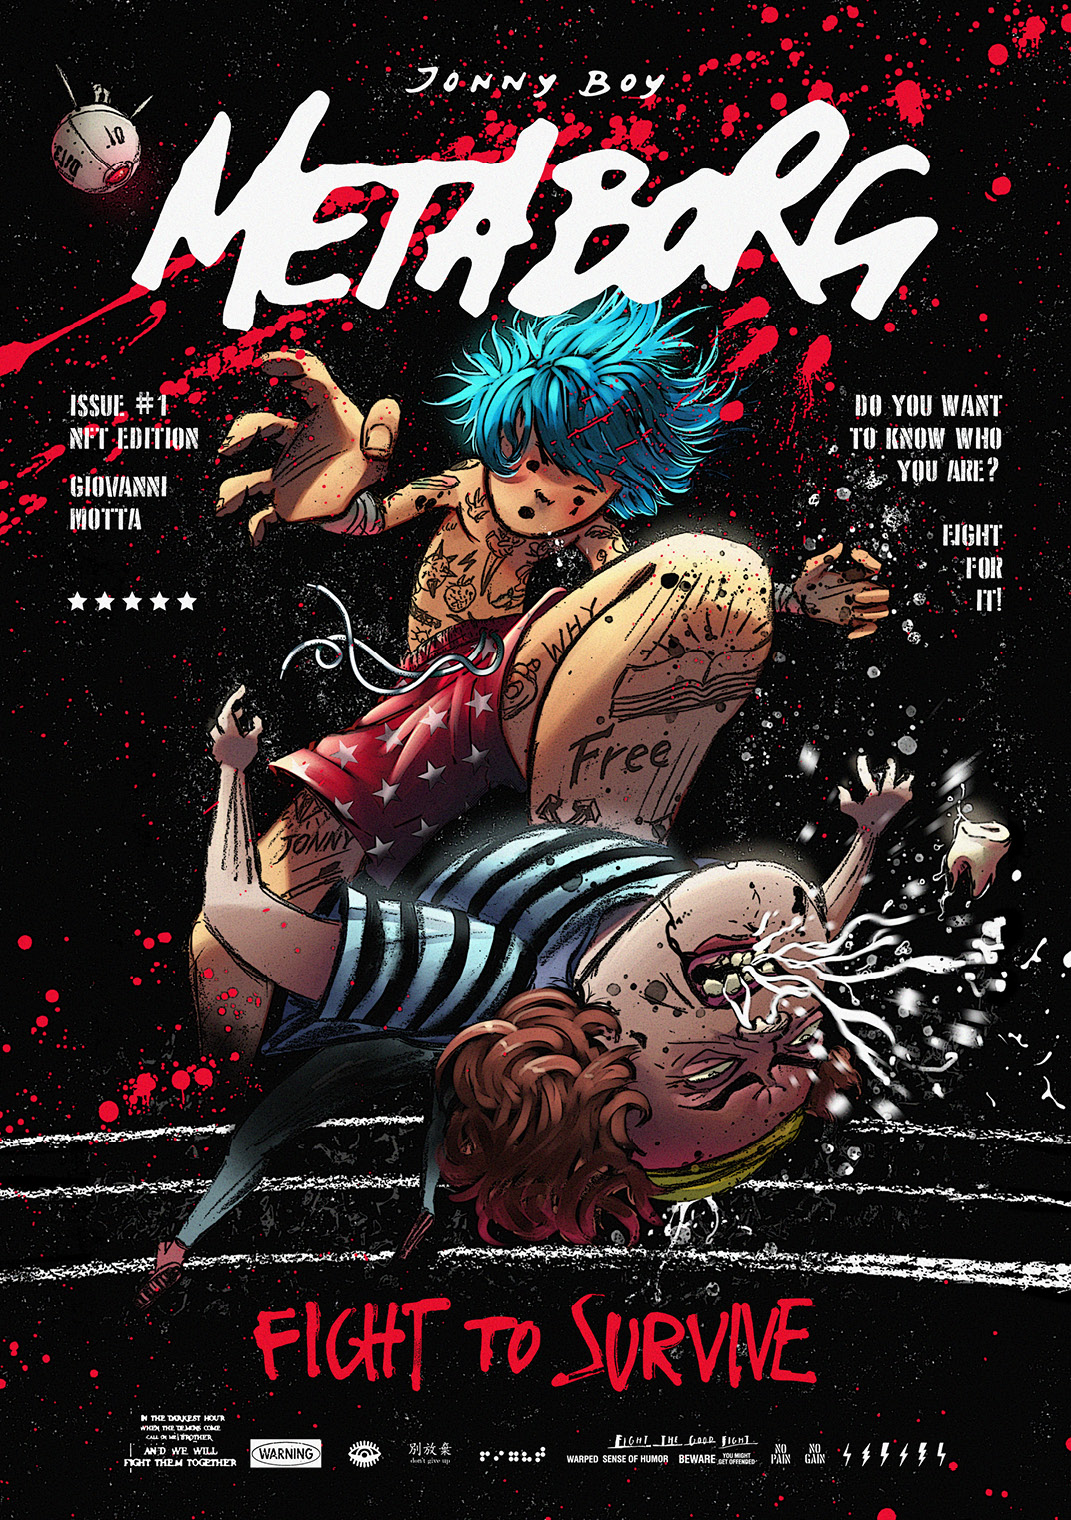 Metaborg - Issue #1 - Original